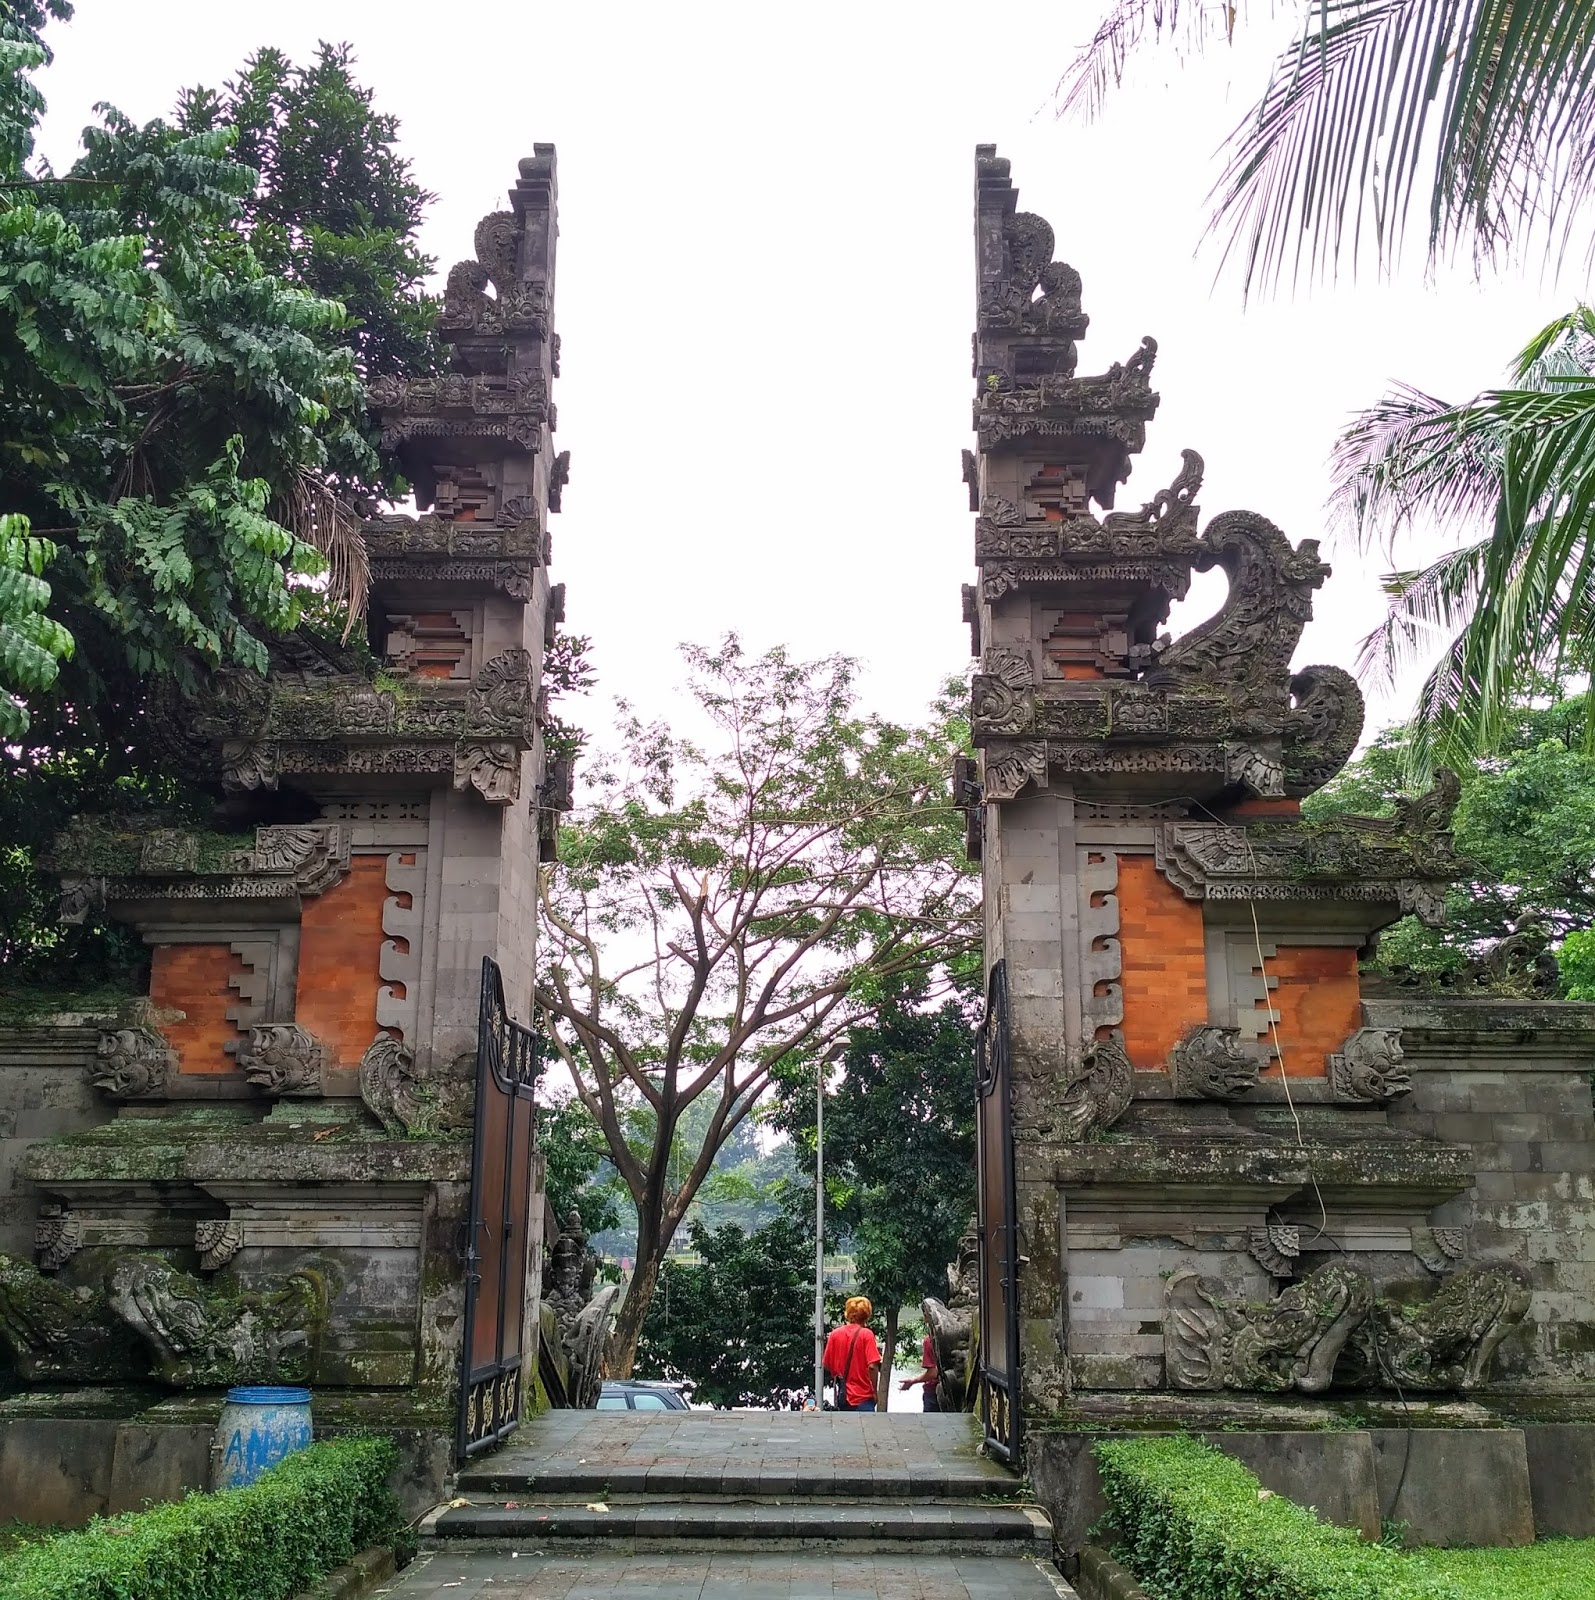  Penjelasan  Lengkap Rumah  Adat  Bali  Gapura  Candi  Bentar  